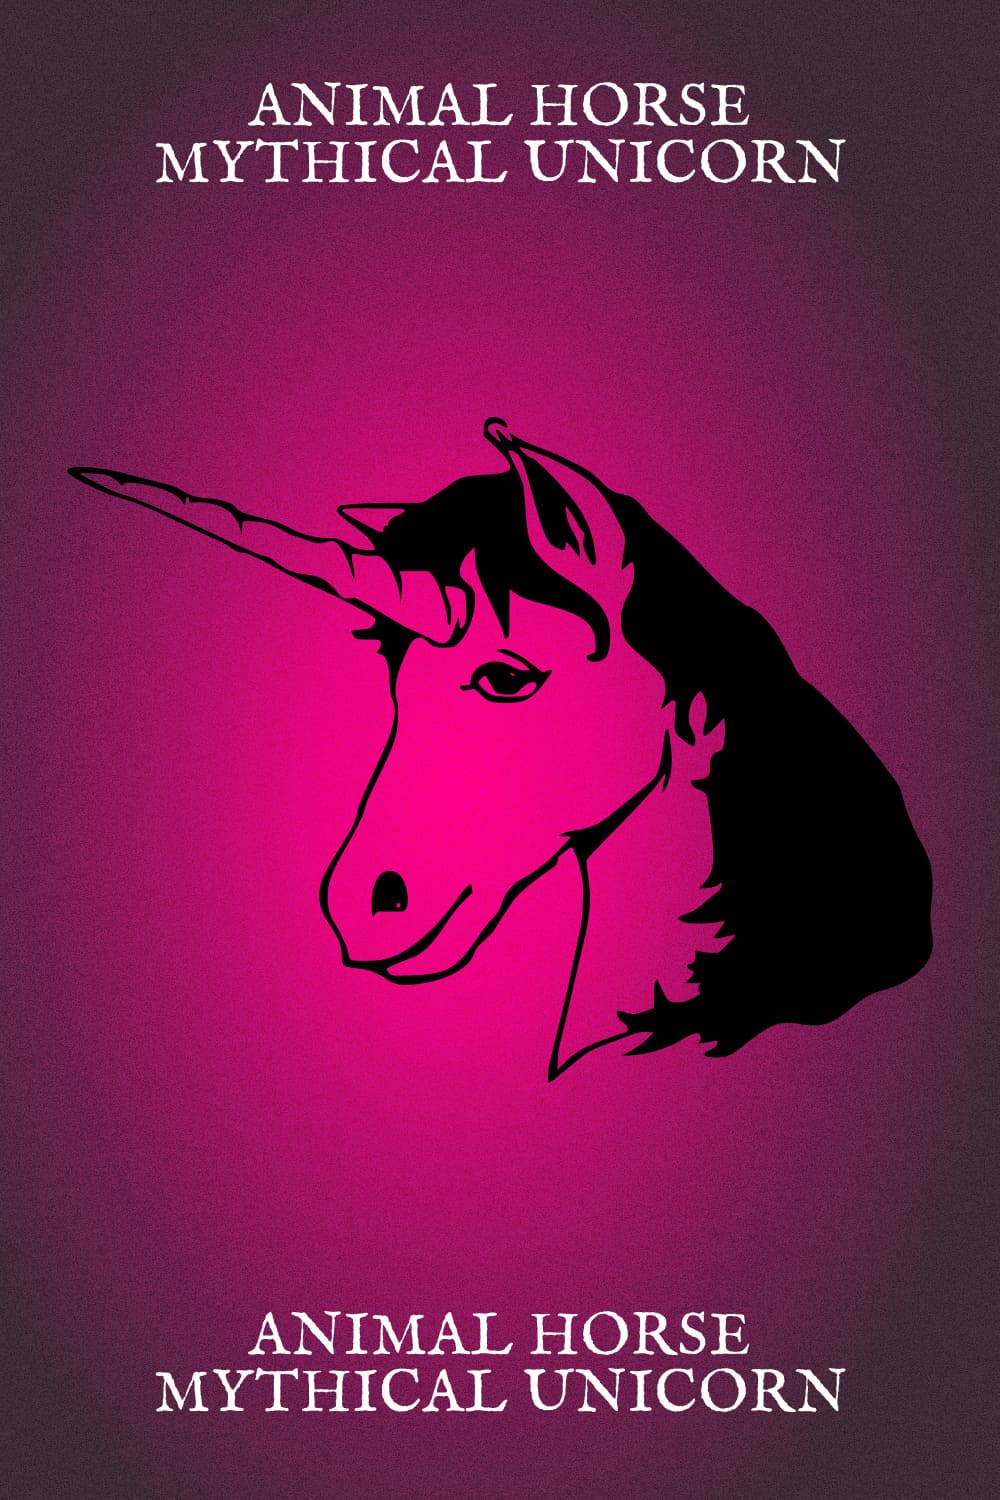 Animal Horse Mythical Unicorn - Pinterest Image.